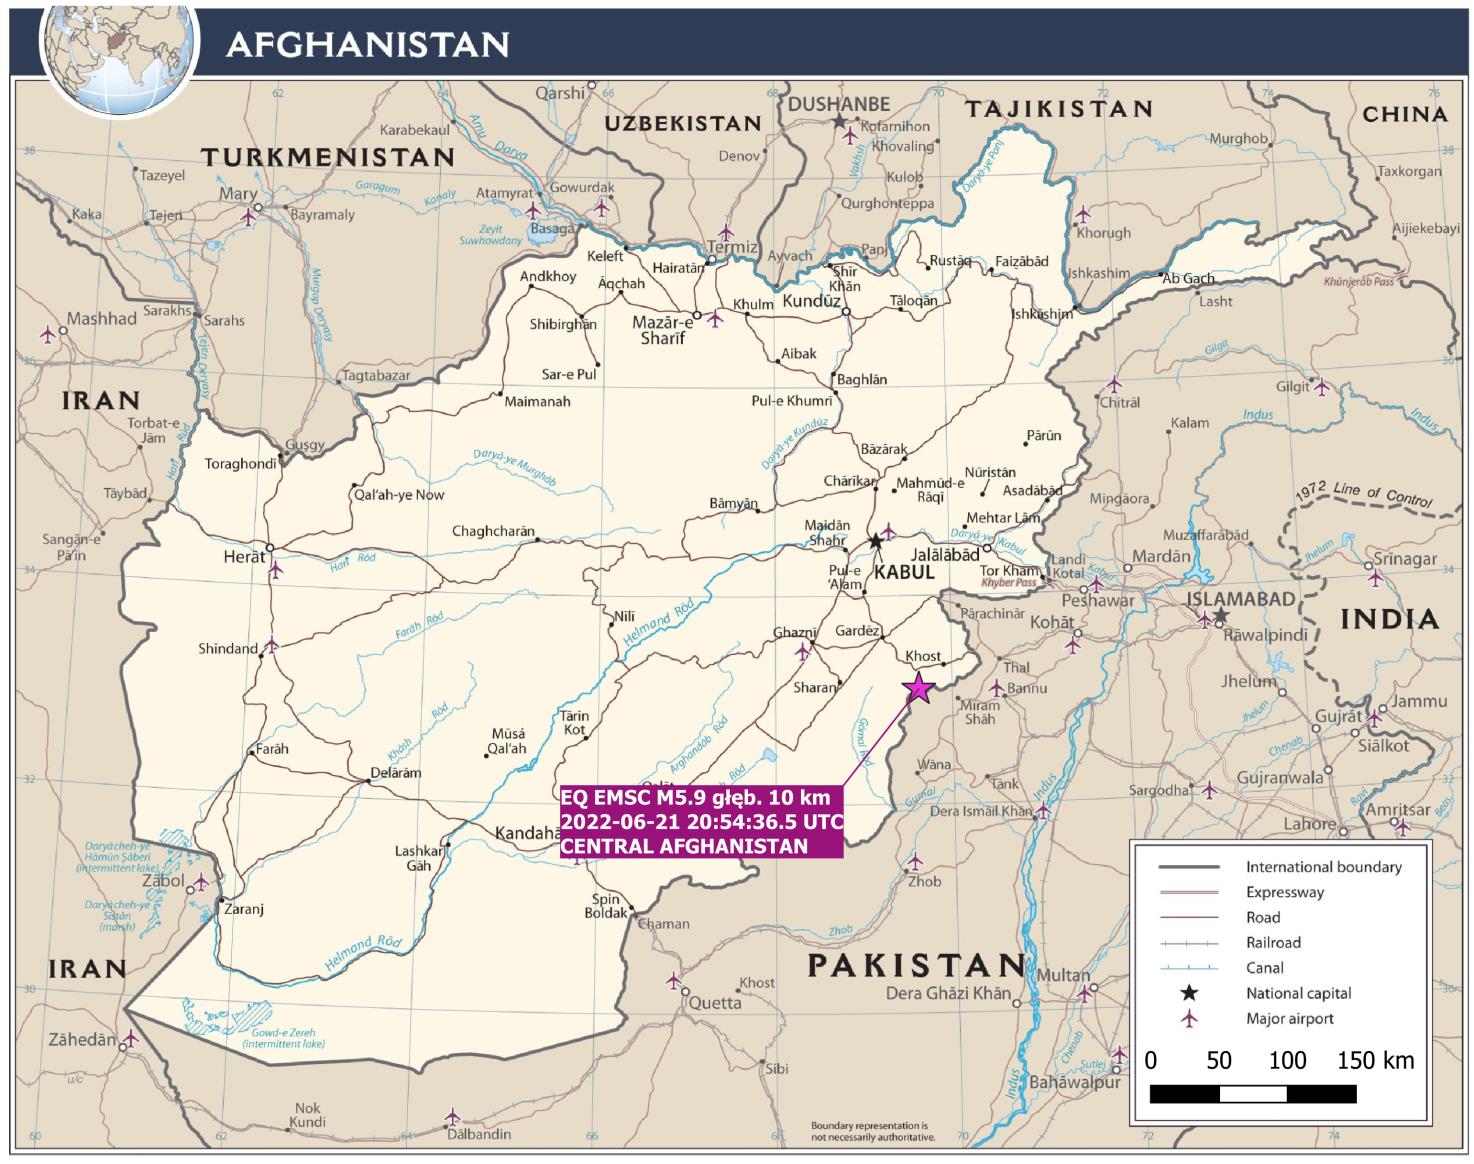 Lokalizacja epicentrum trzęsienia ziemi o magnitudzie M5.9 (EMSC) z dnia 21/06/2022 r., godz. 20:54:36.5 UTC w regionie sejsmologicznym Central Afghanistan (oprac. PSG, mapa bazowa: CIA).